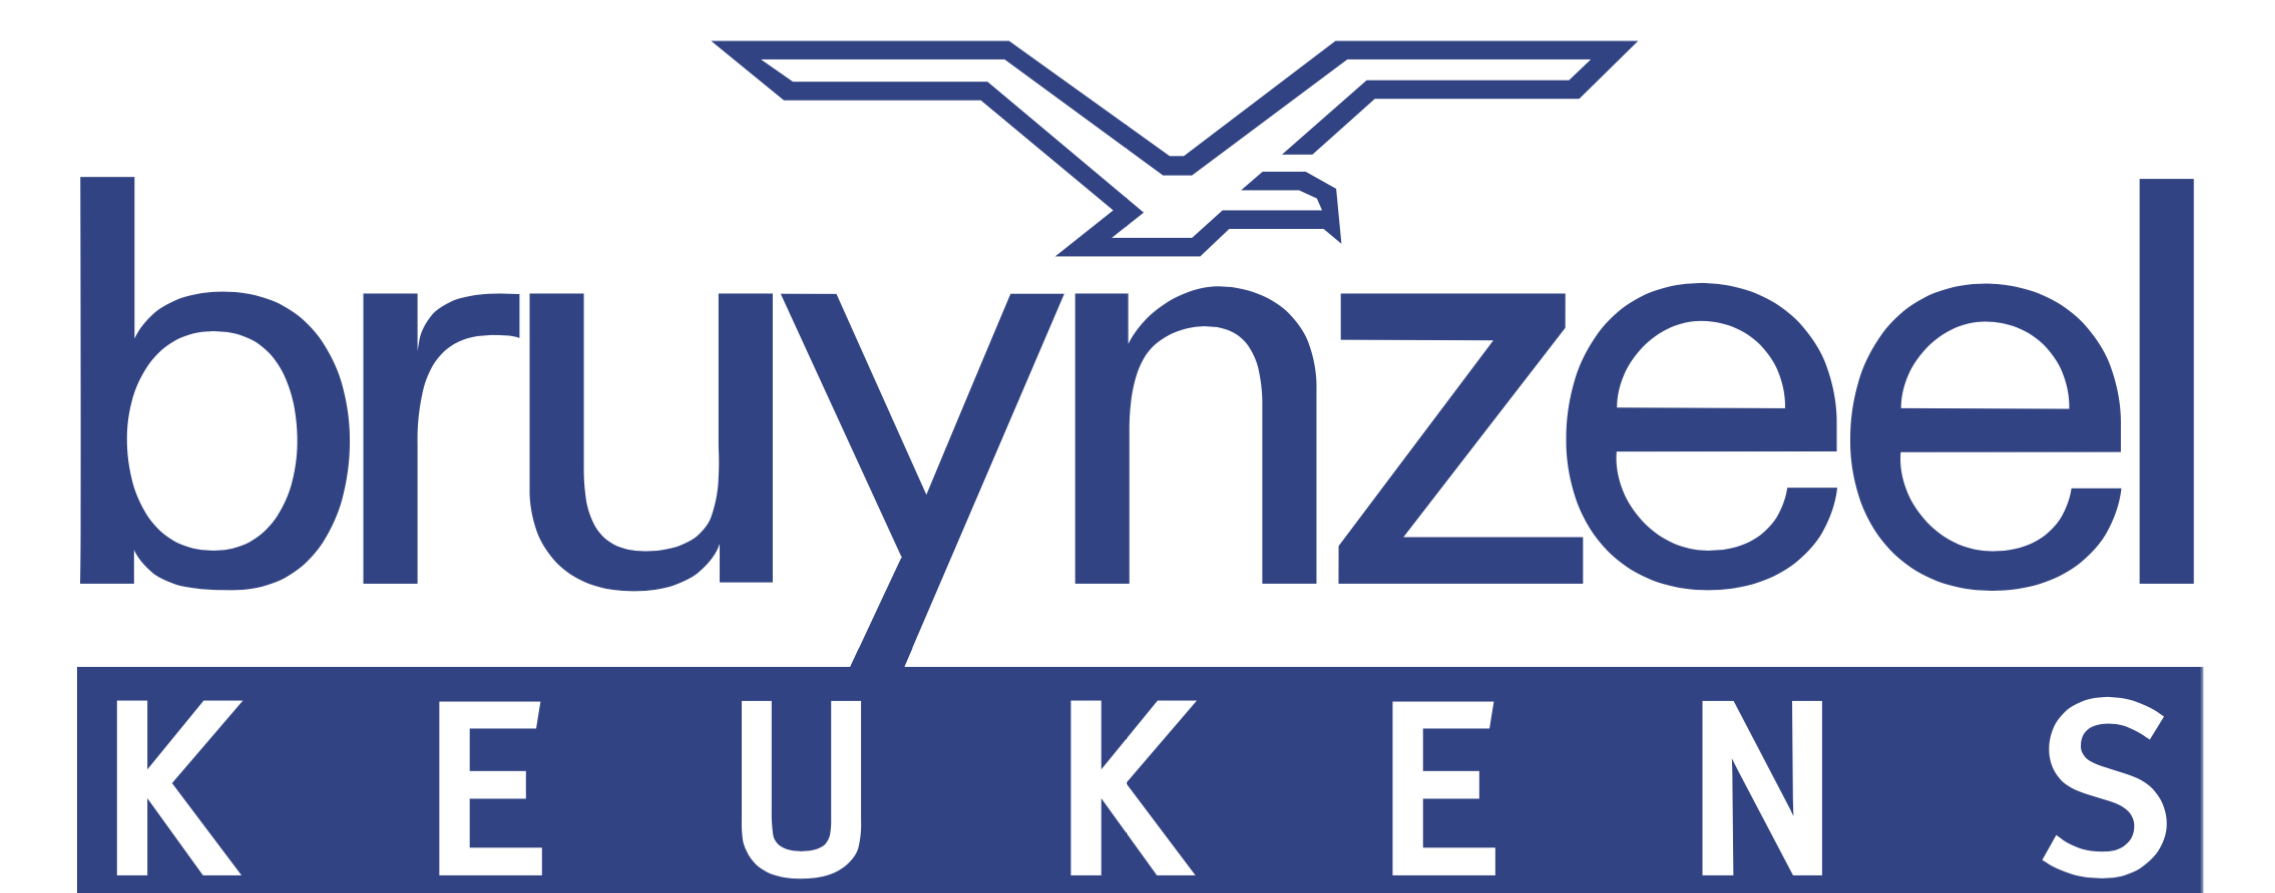 Bruynzeel Keukens webwinkel